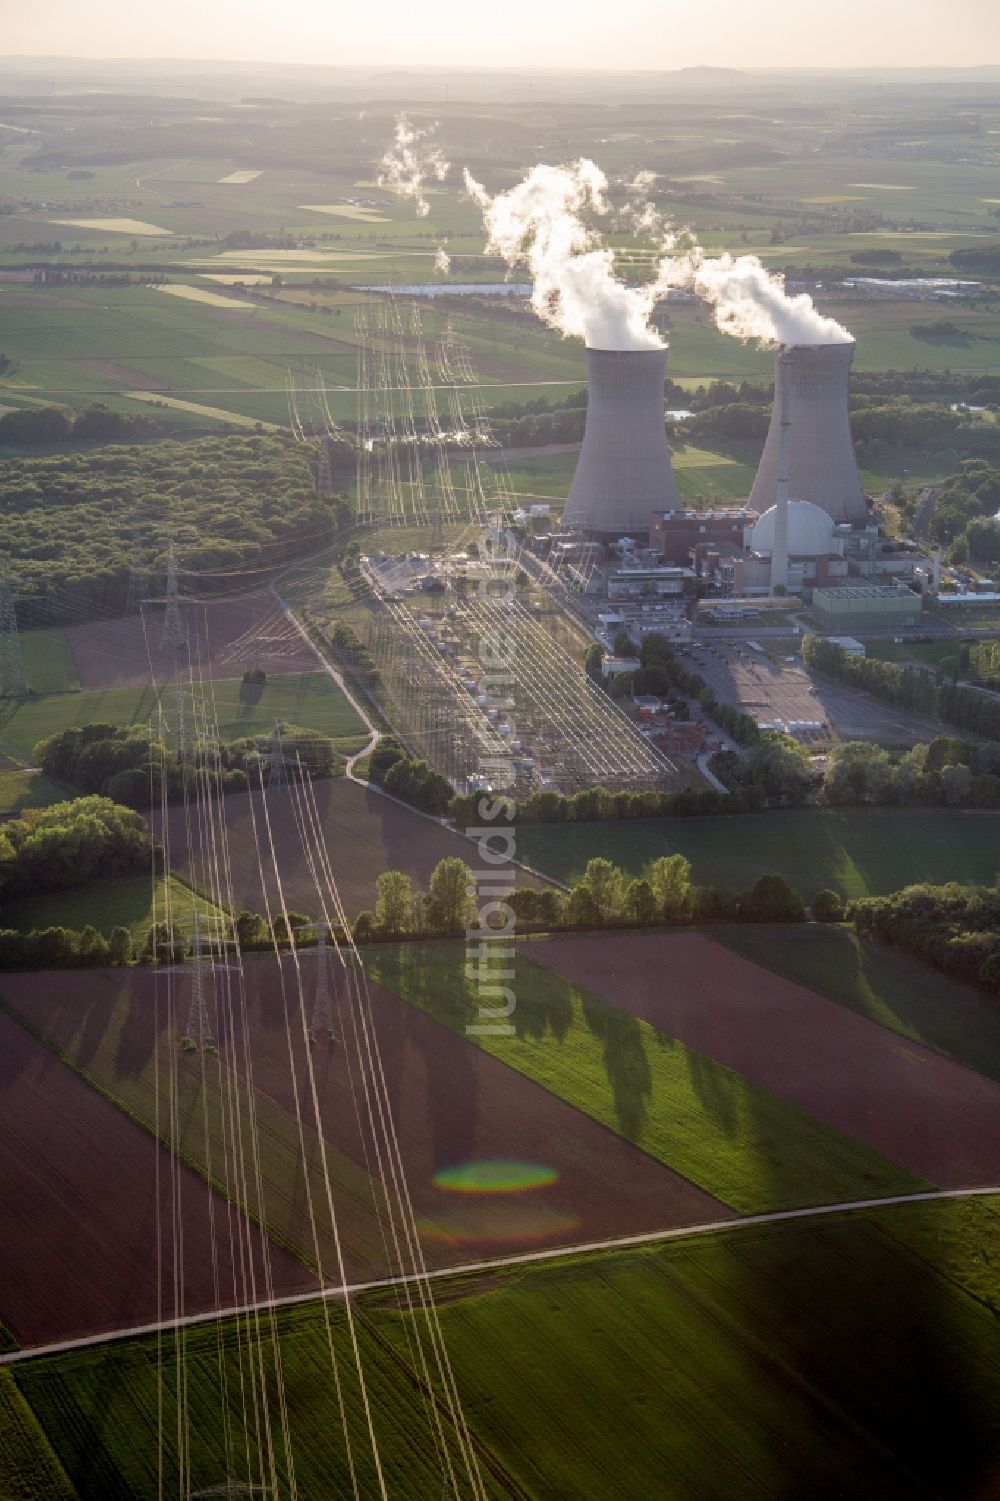 Grafenrheinfeld von oben - Reaktorblöcke und Anlagen des AKW - KKW Kernkraftwerk in Grafenrheinfeld im Bundesland Bayern, Deutschland